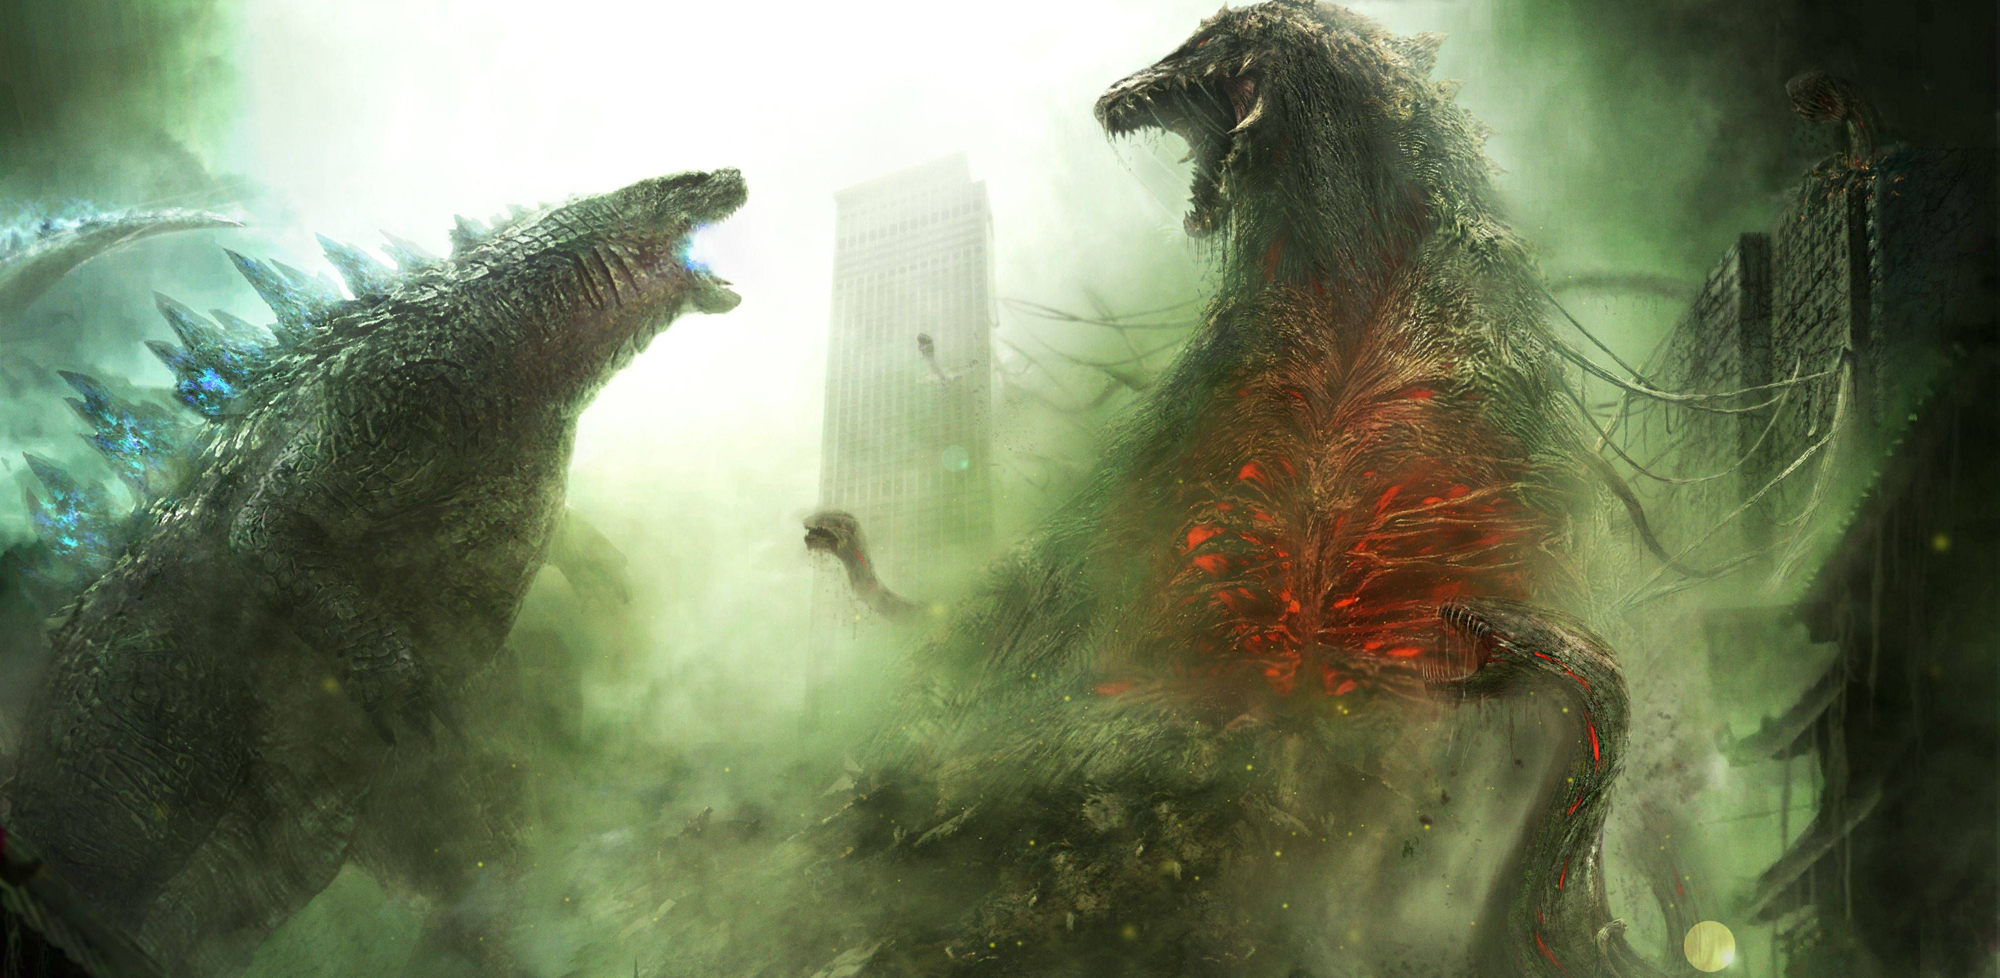 General 2000x978 Godzilla Biollante creature battle digital art movies science fiction kaiju